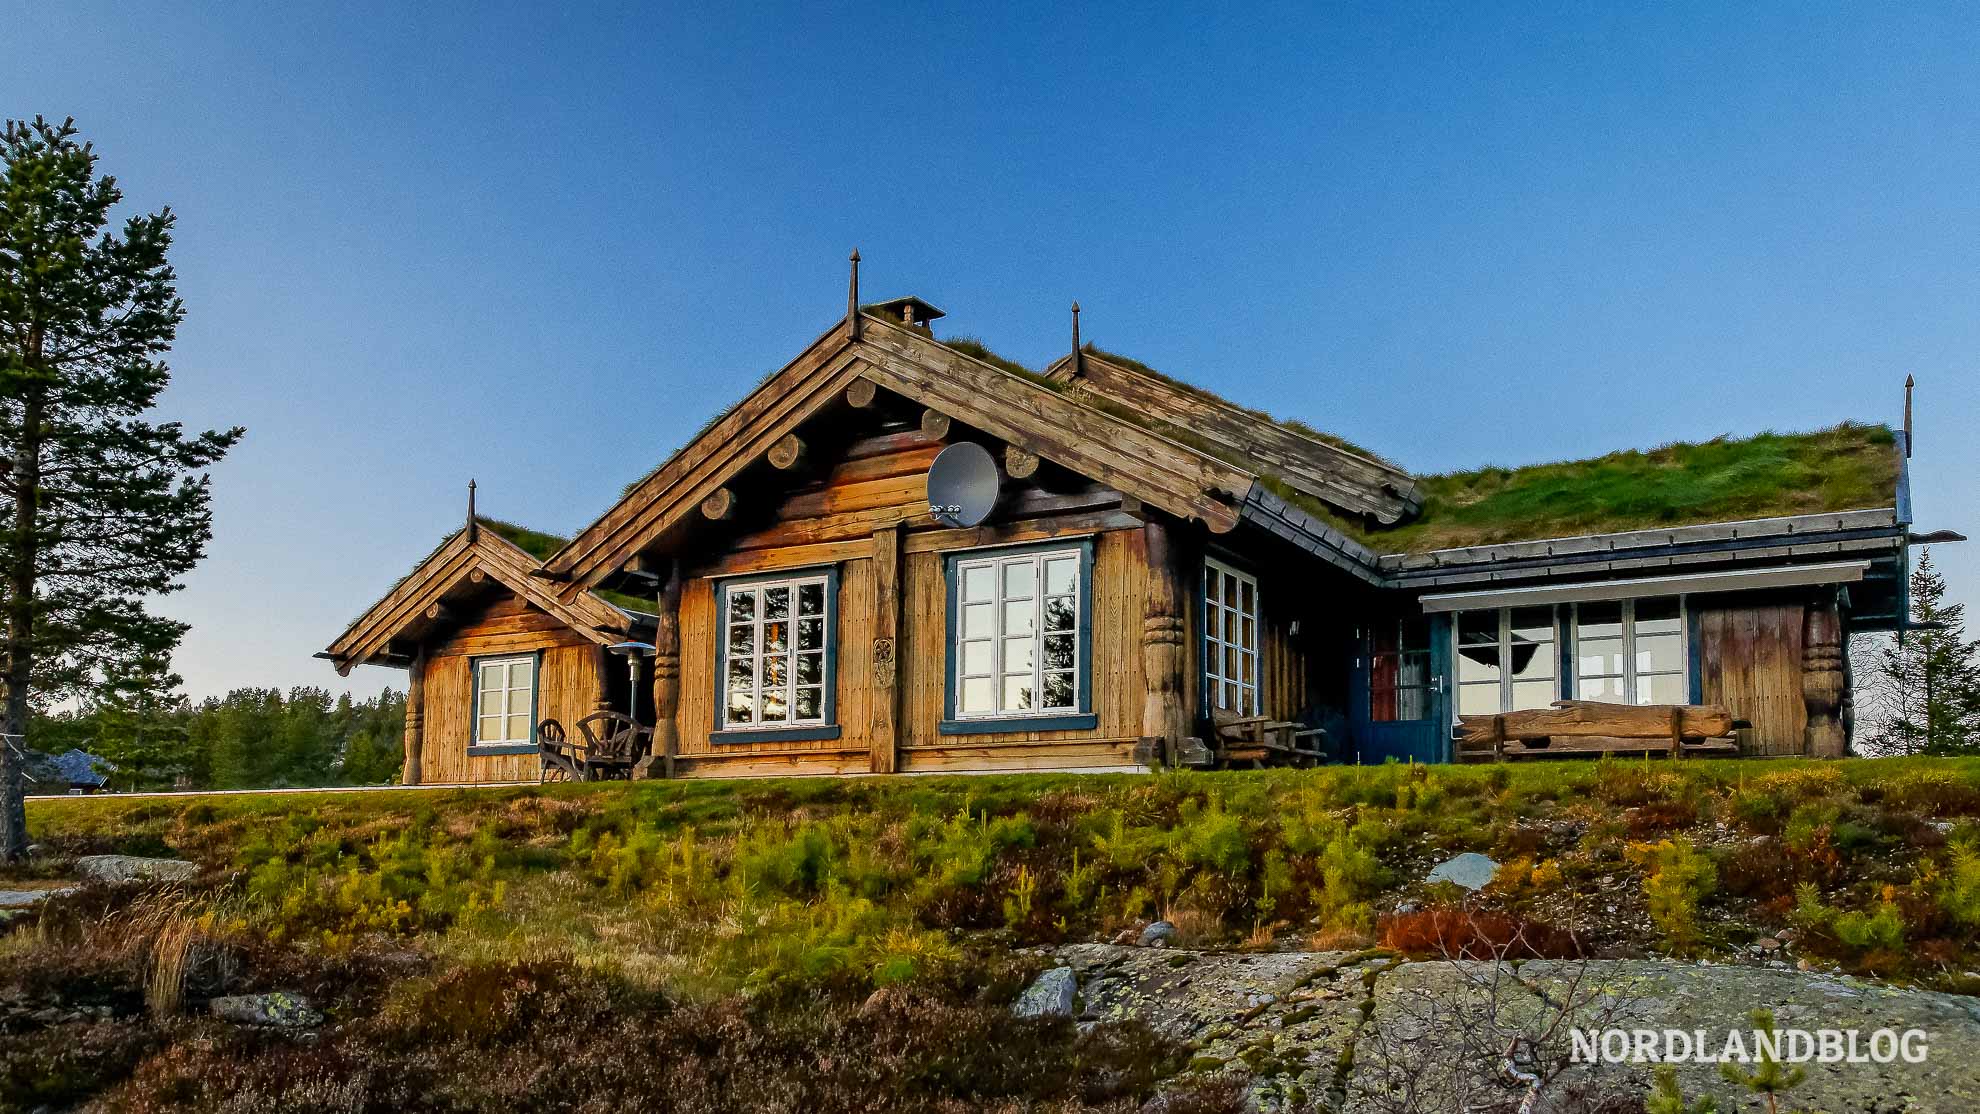 Hütte in der Telemark (Südnorwegen) - Übernachten in Norwegen (Nordlandblog)